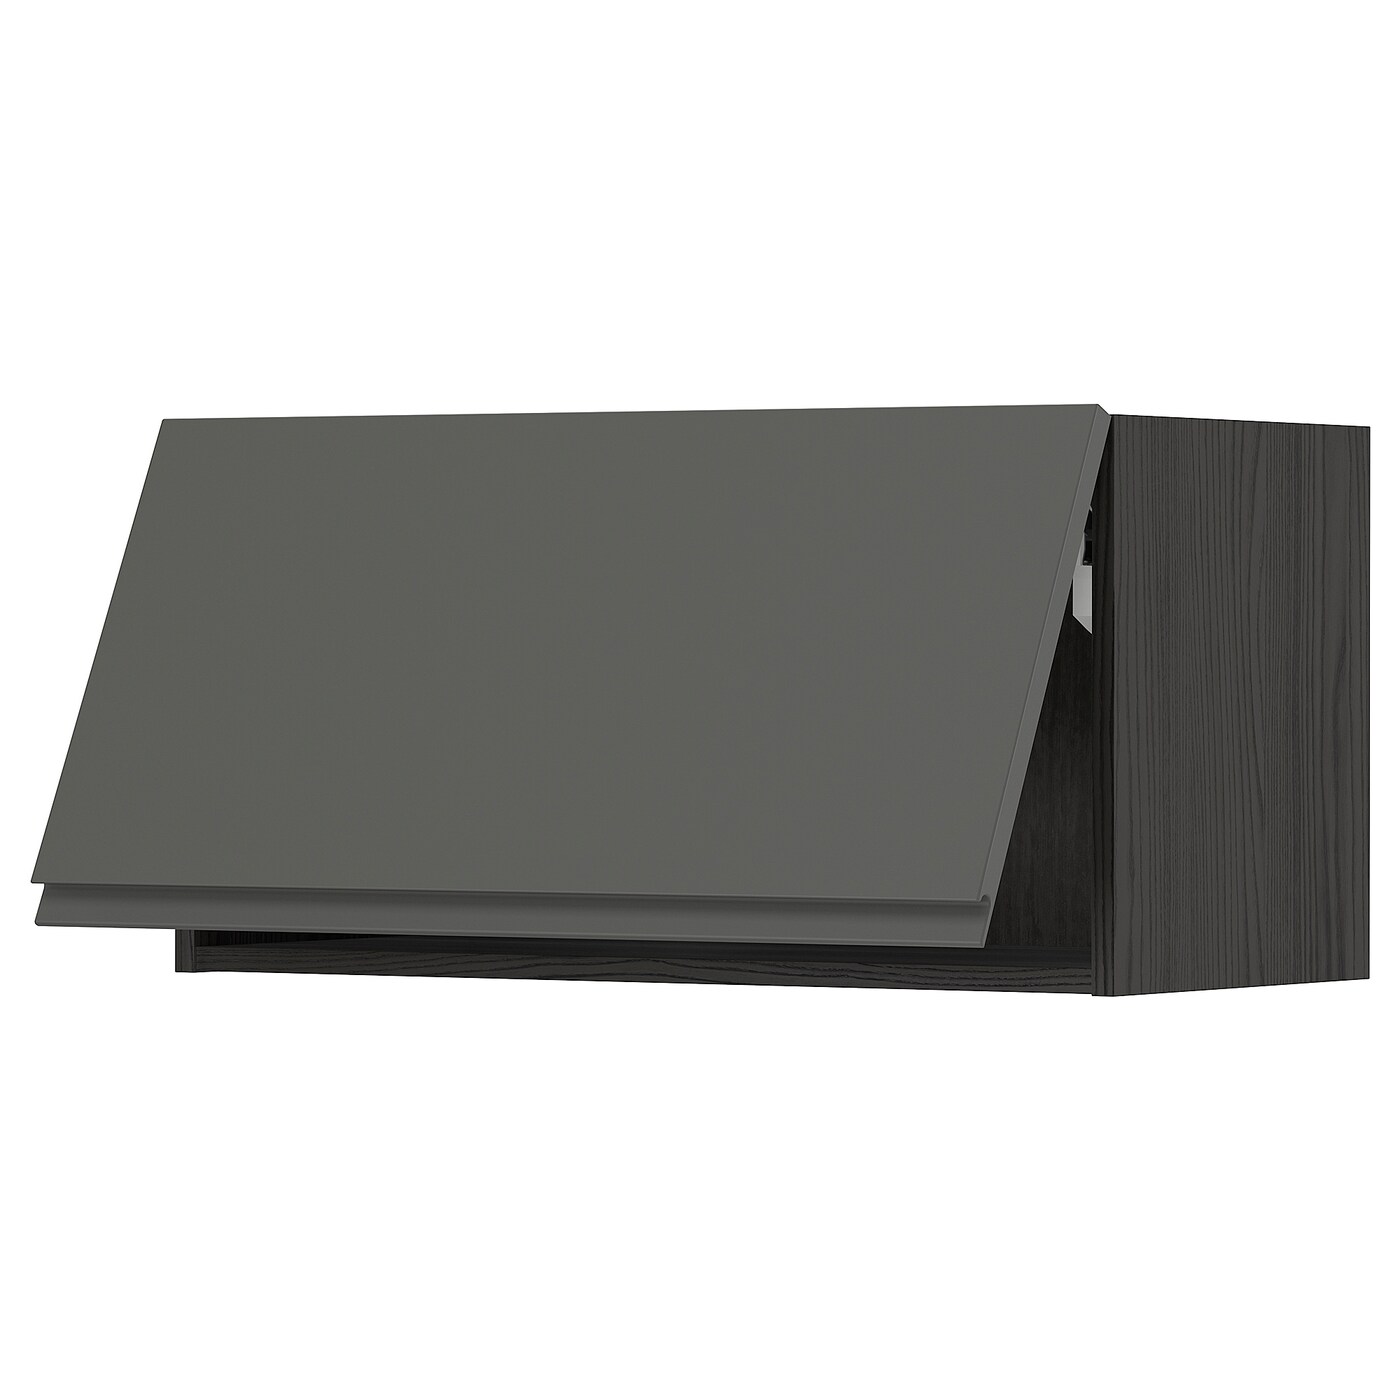 Навесной шкаф - METOD IKEA/ МЕТОД ИКЕА, 40х80 см, черный